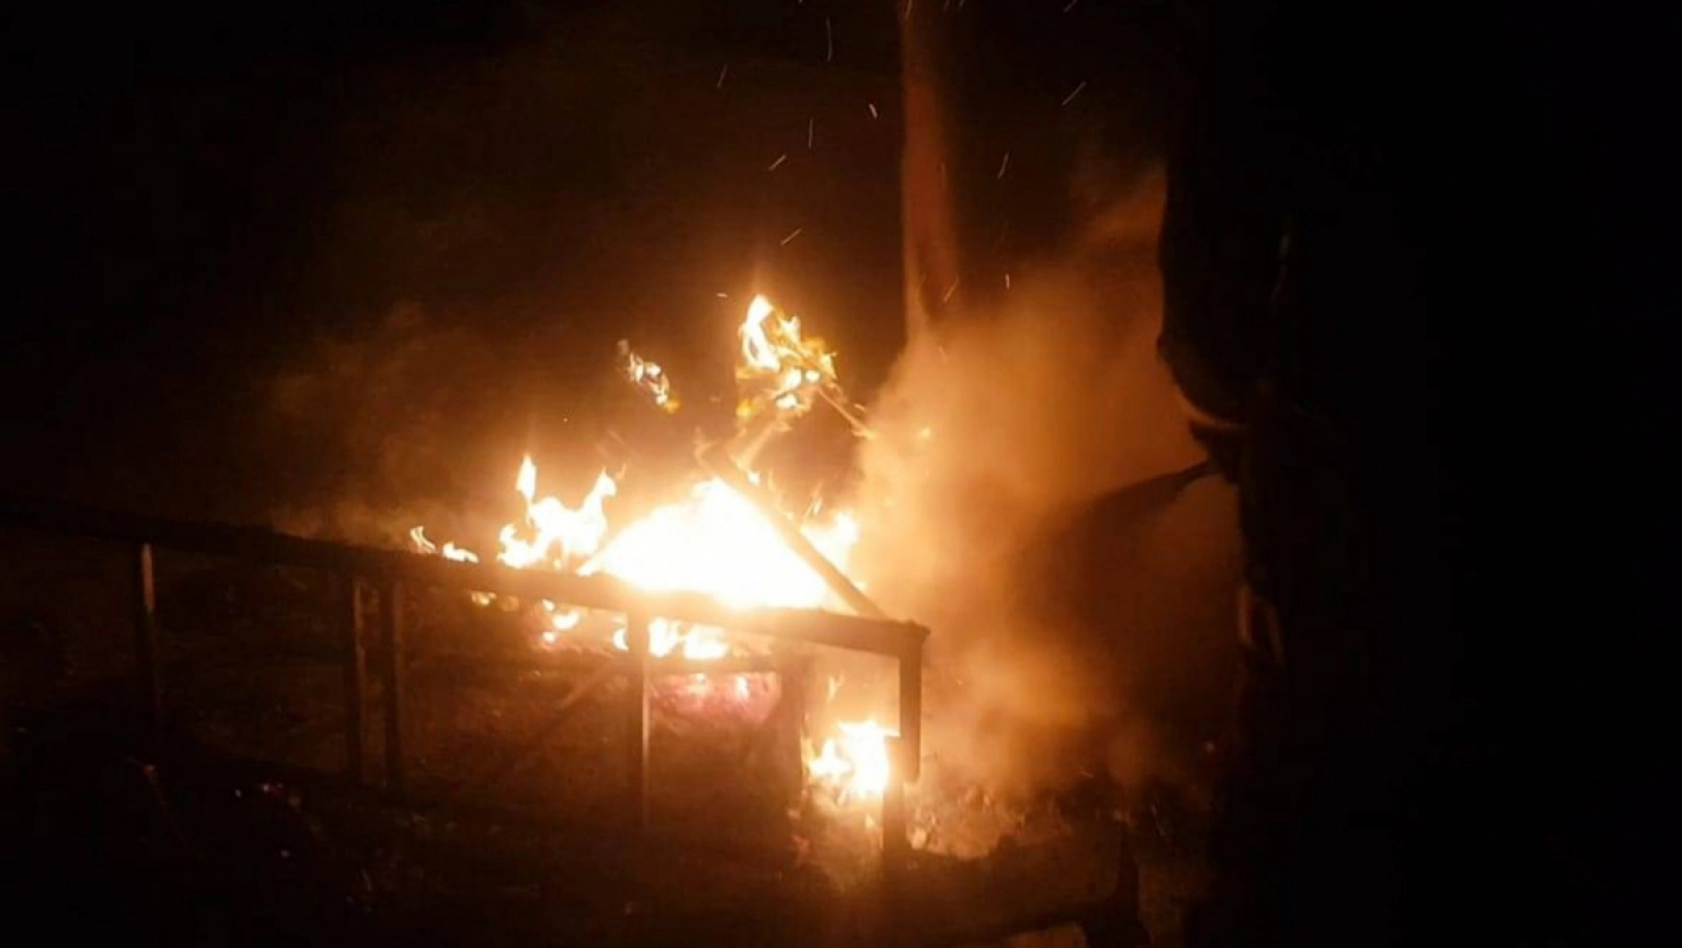 Malatya'da iş merkezinin çatı katında yangın çıktı